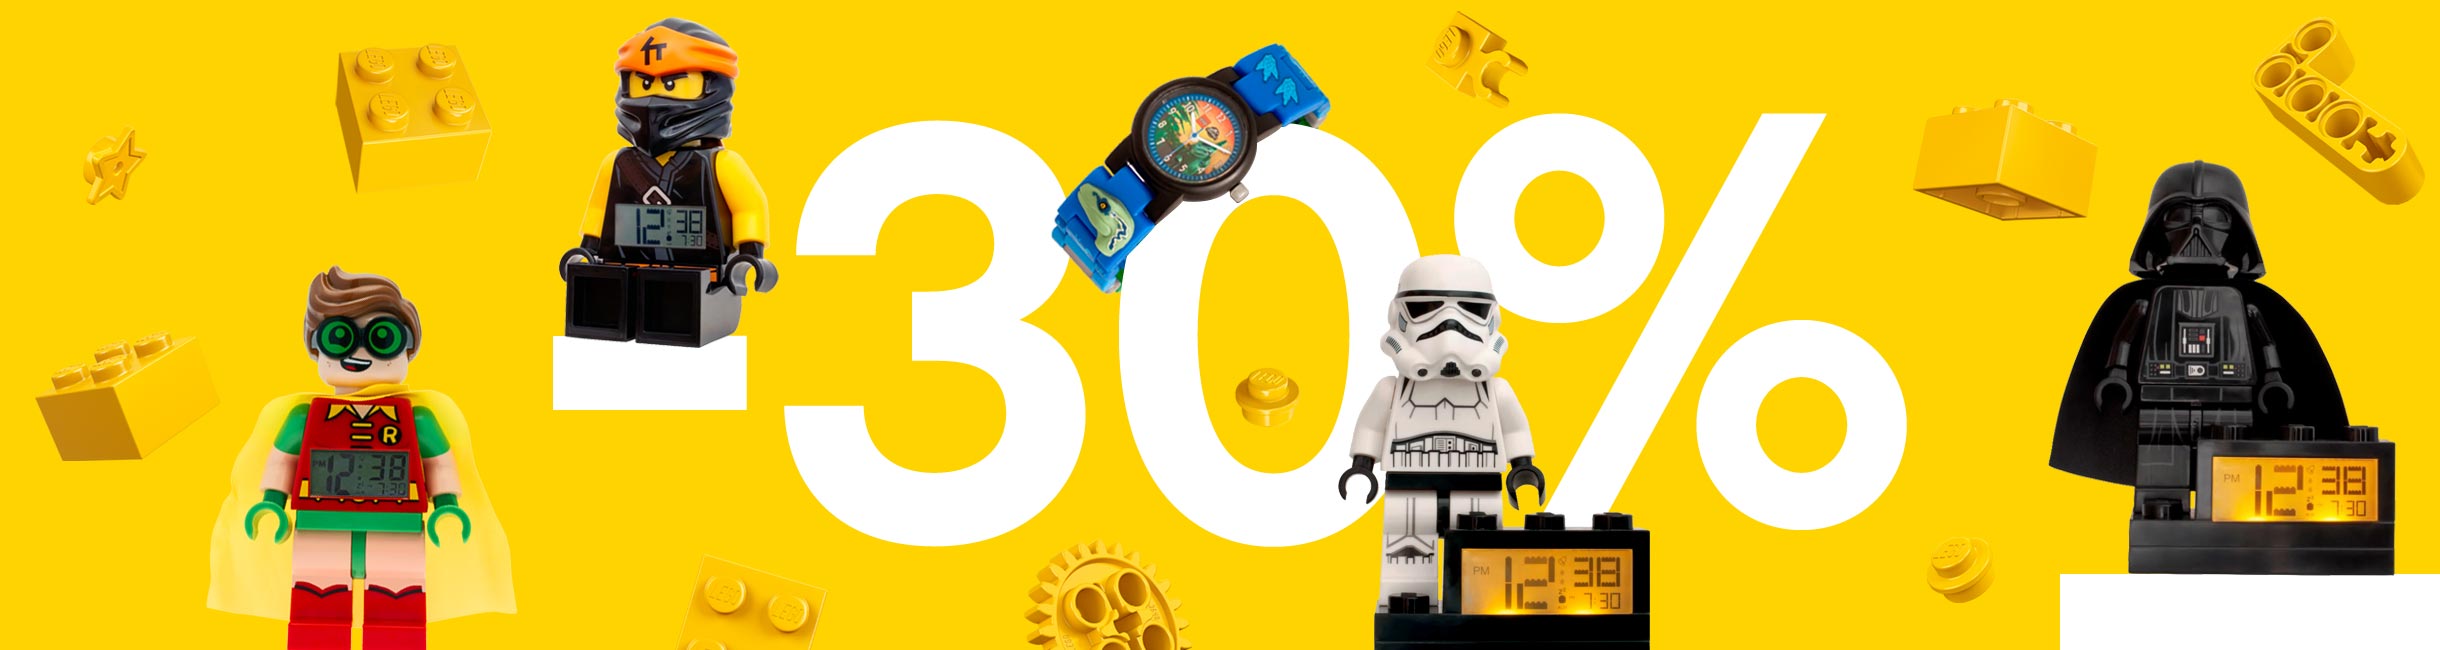 Рекламная акция Лего (LEGO) «Который час? Время скидки!»